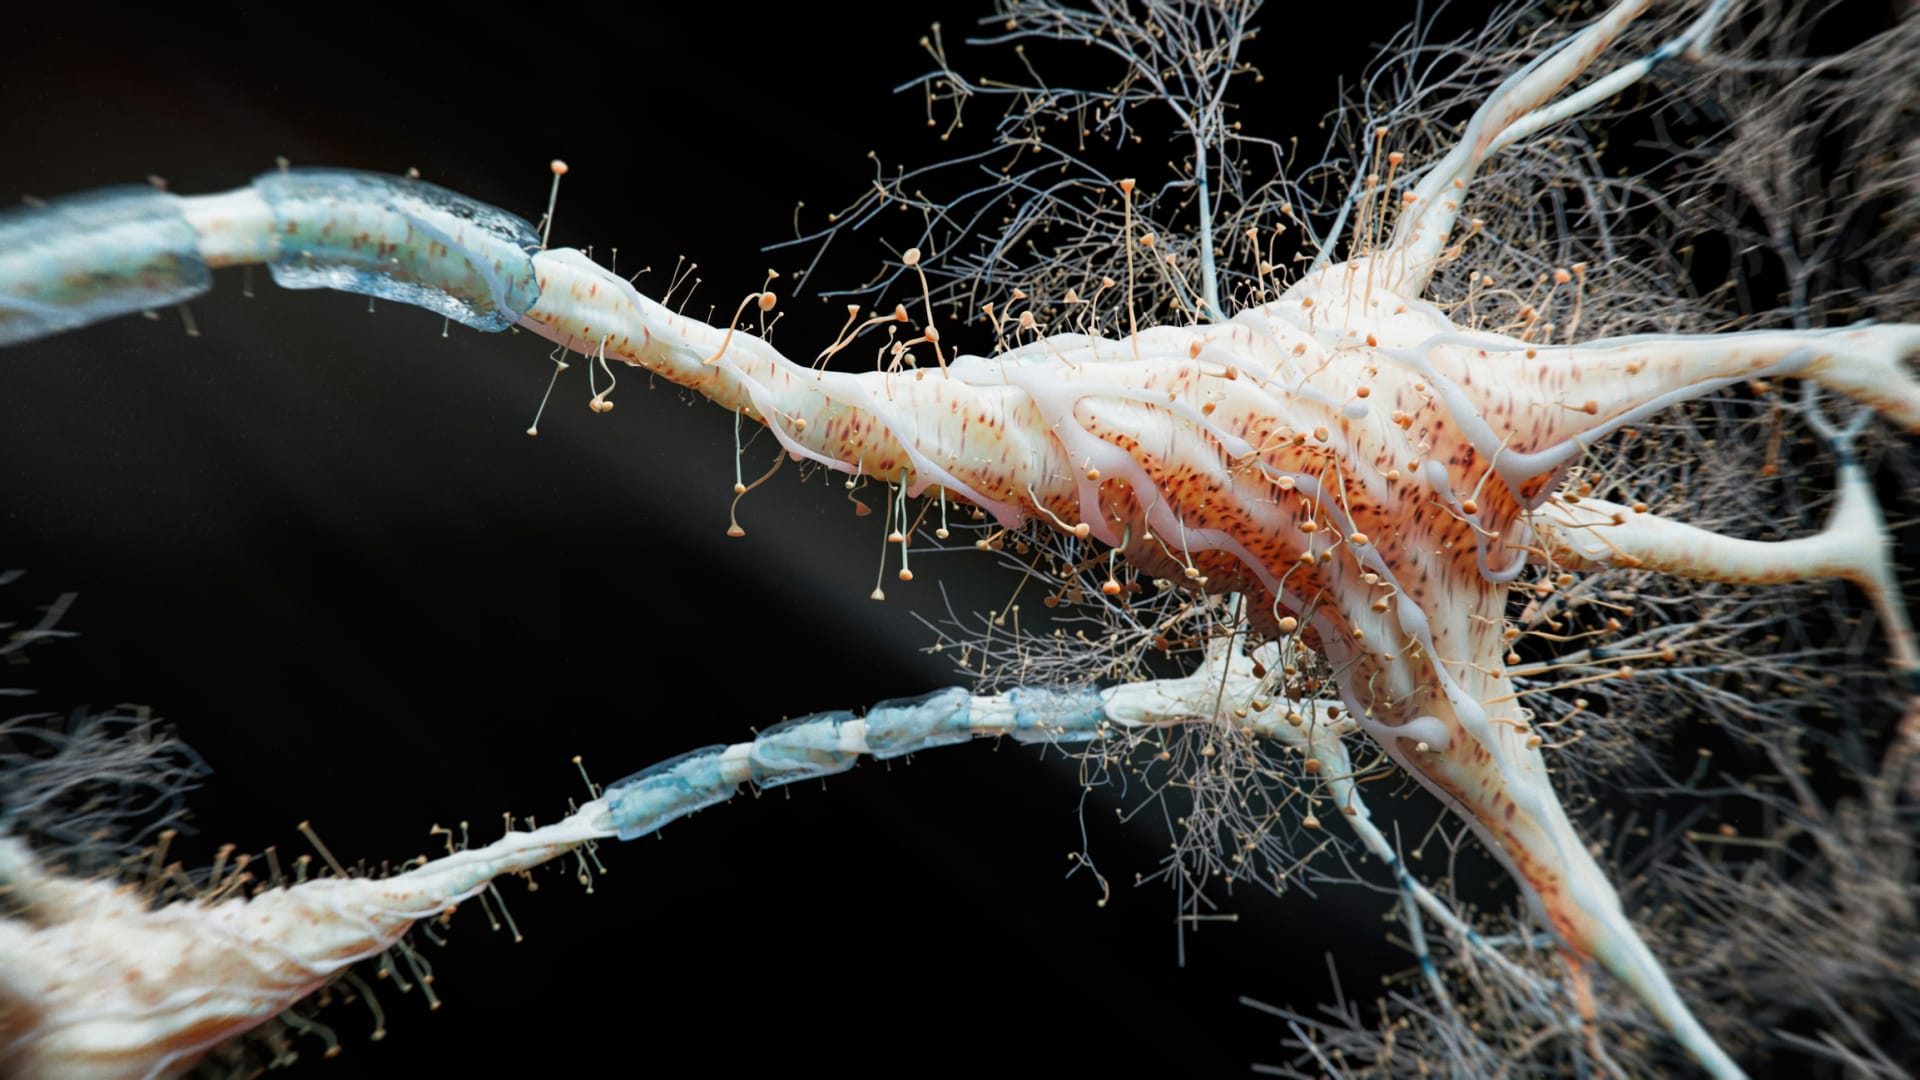 Neurony po poškození velice rychle odumírají